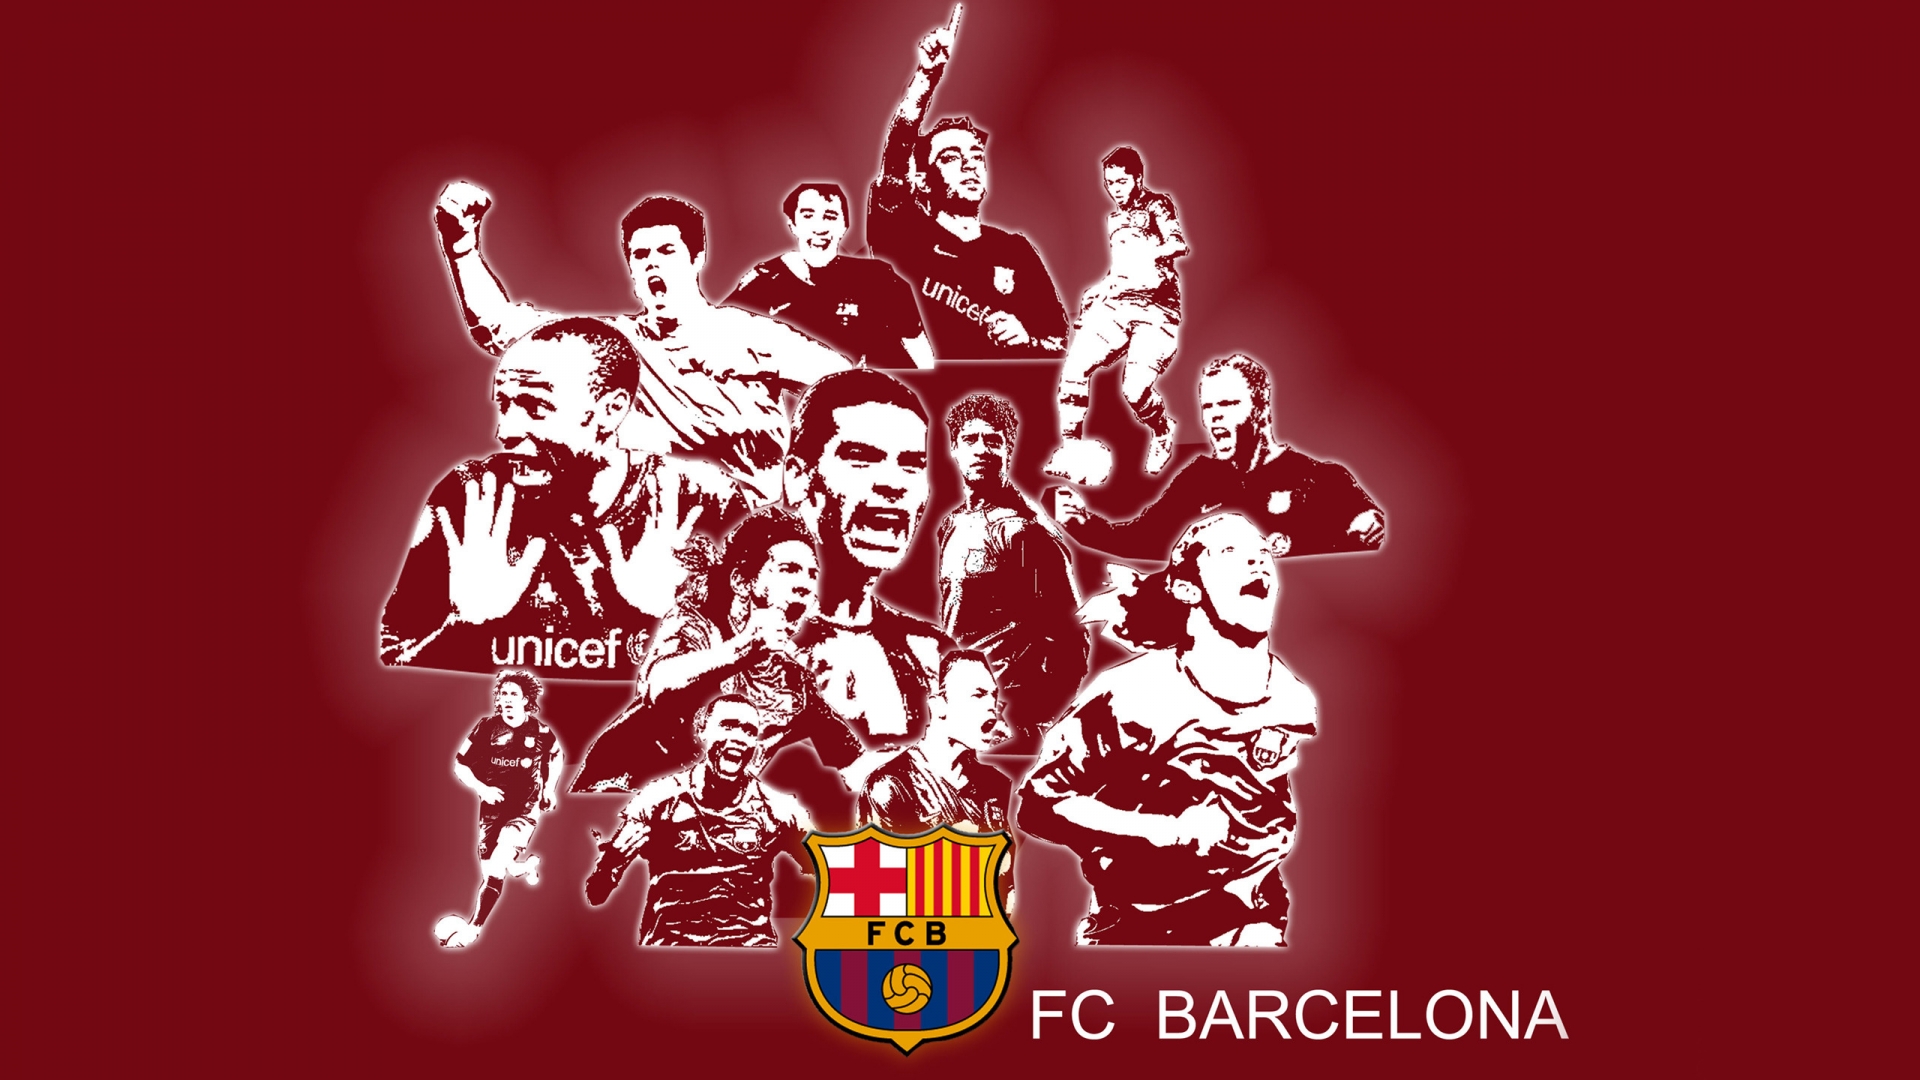 FC Barcelona for 1920 x 1080 HDTV 1080p resolution